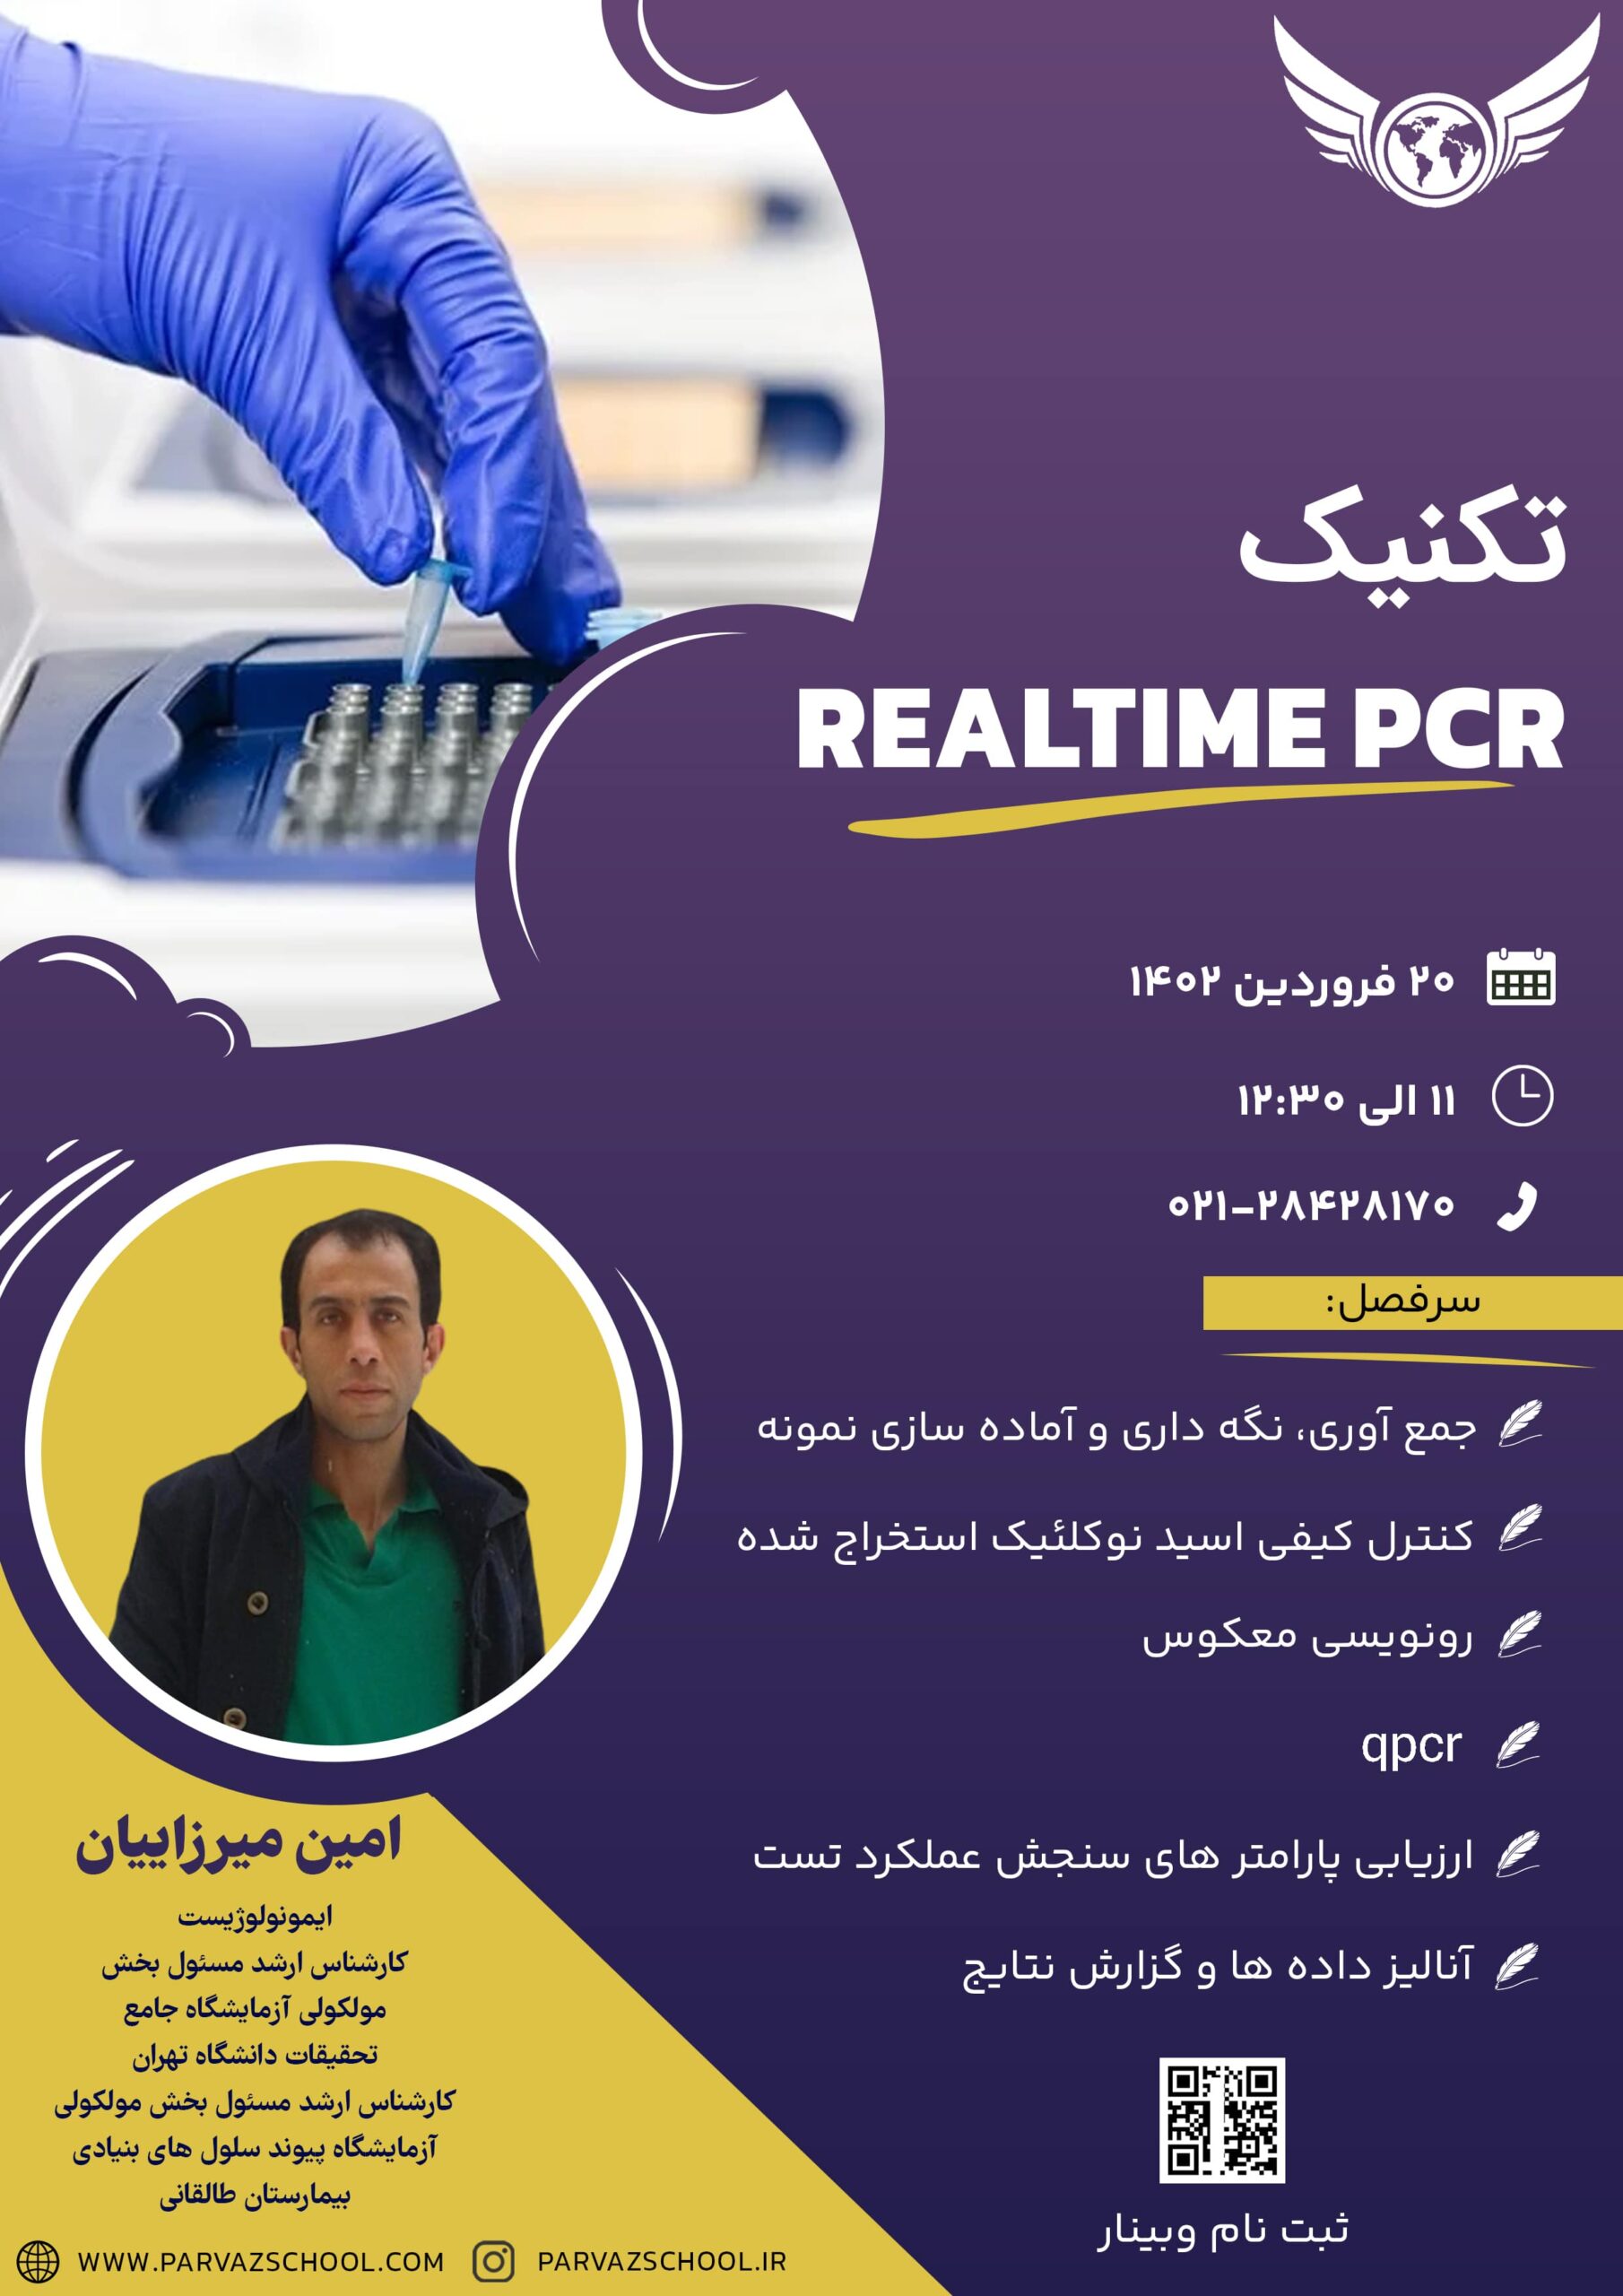 تکنیک REALTIME PCR